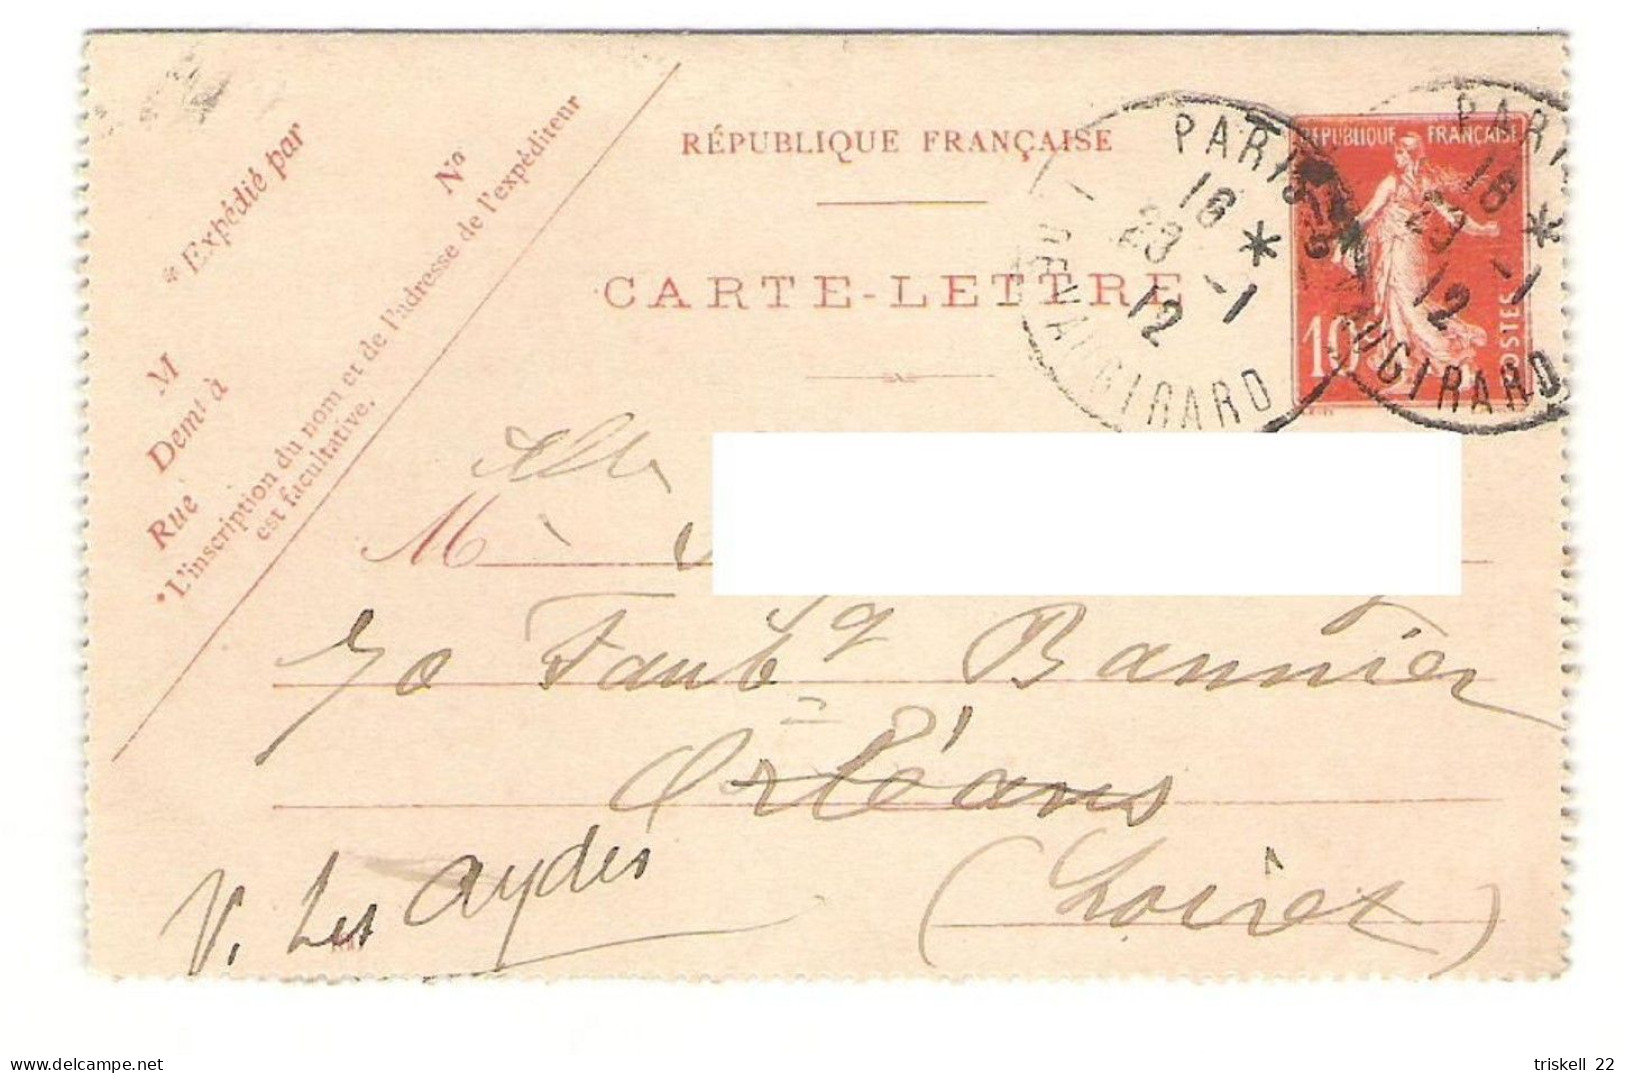 Carte-lettre Avec Timbre Entier Postal N° 135 - Oblitération De Paris - Vaugirard  23-1-1912 - 1877-1920: Période Semi Moderne